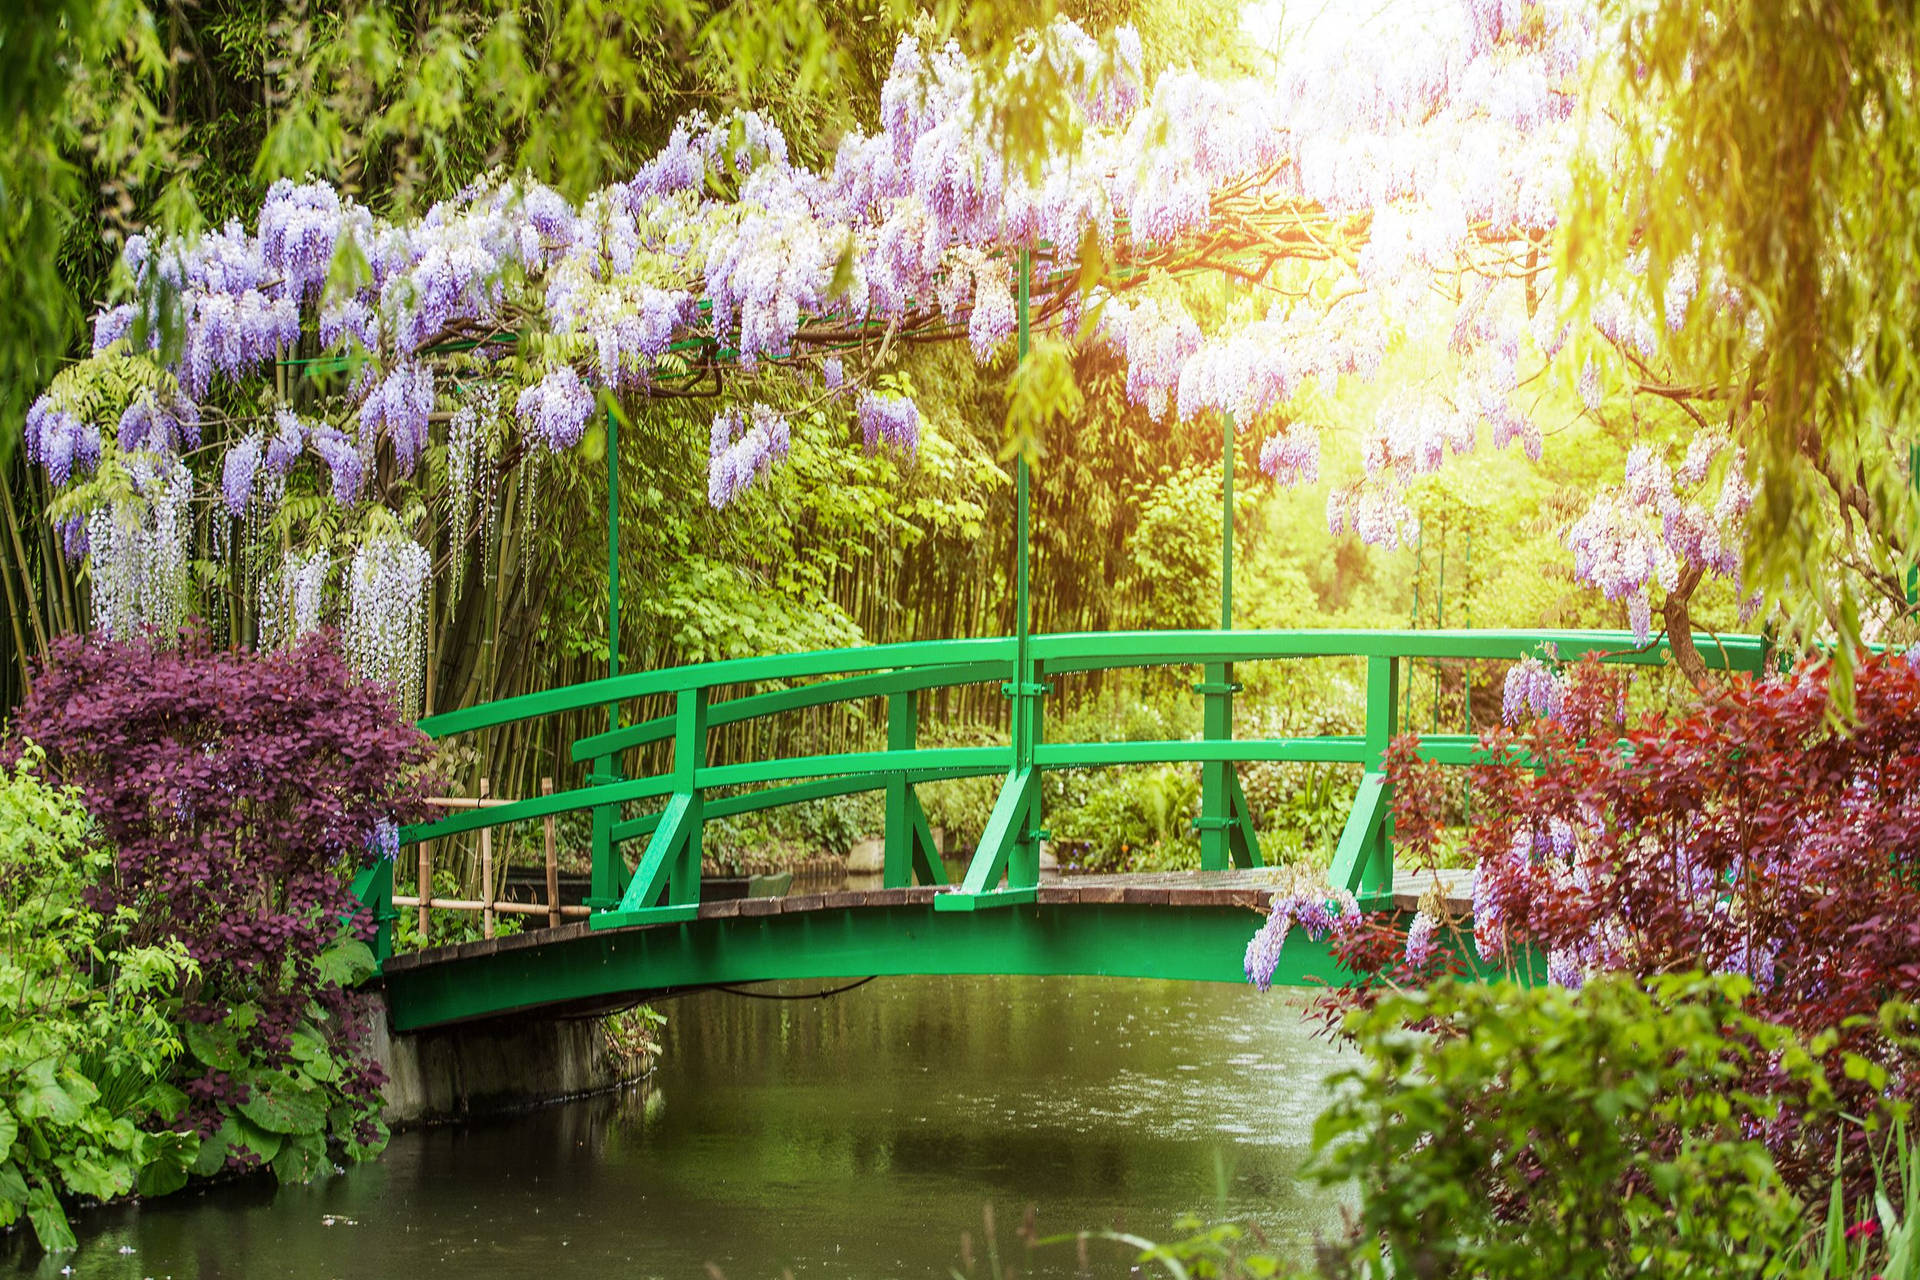 France's Monet's Garden